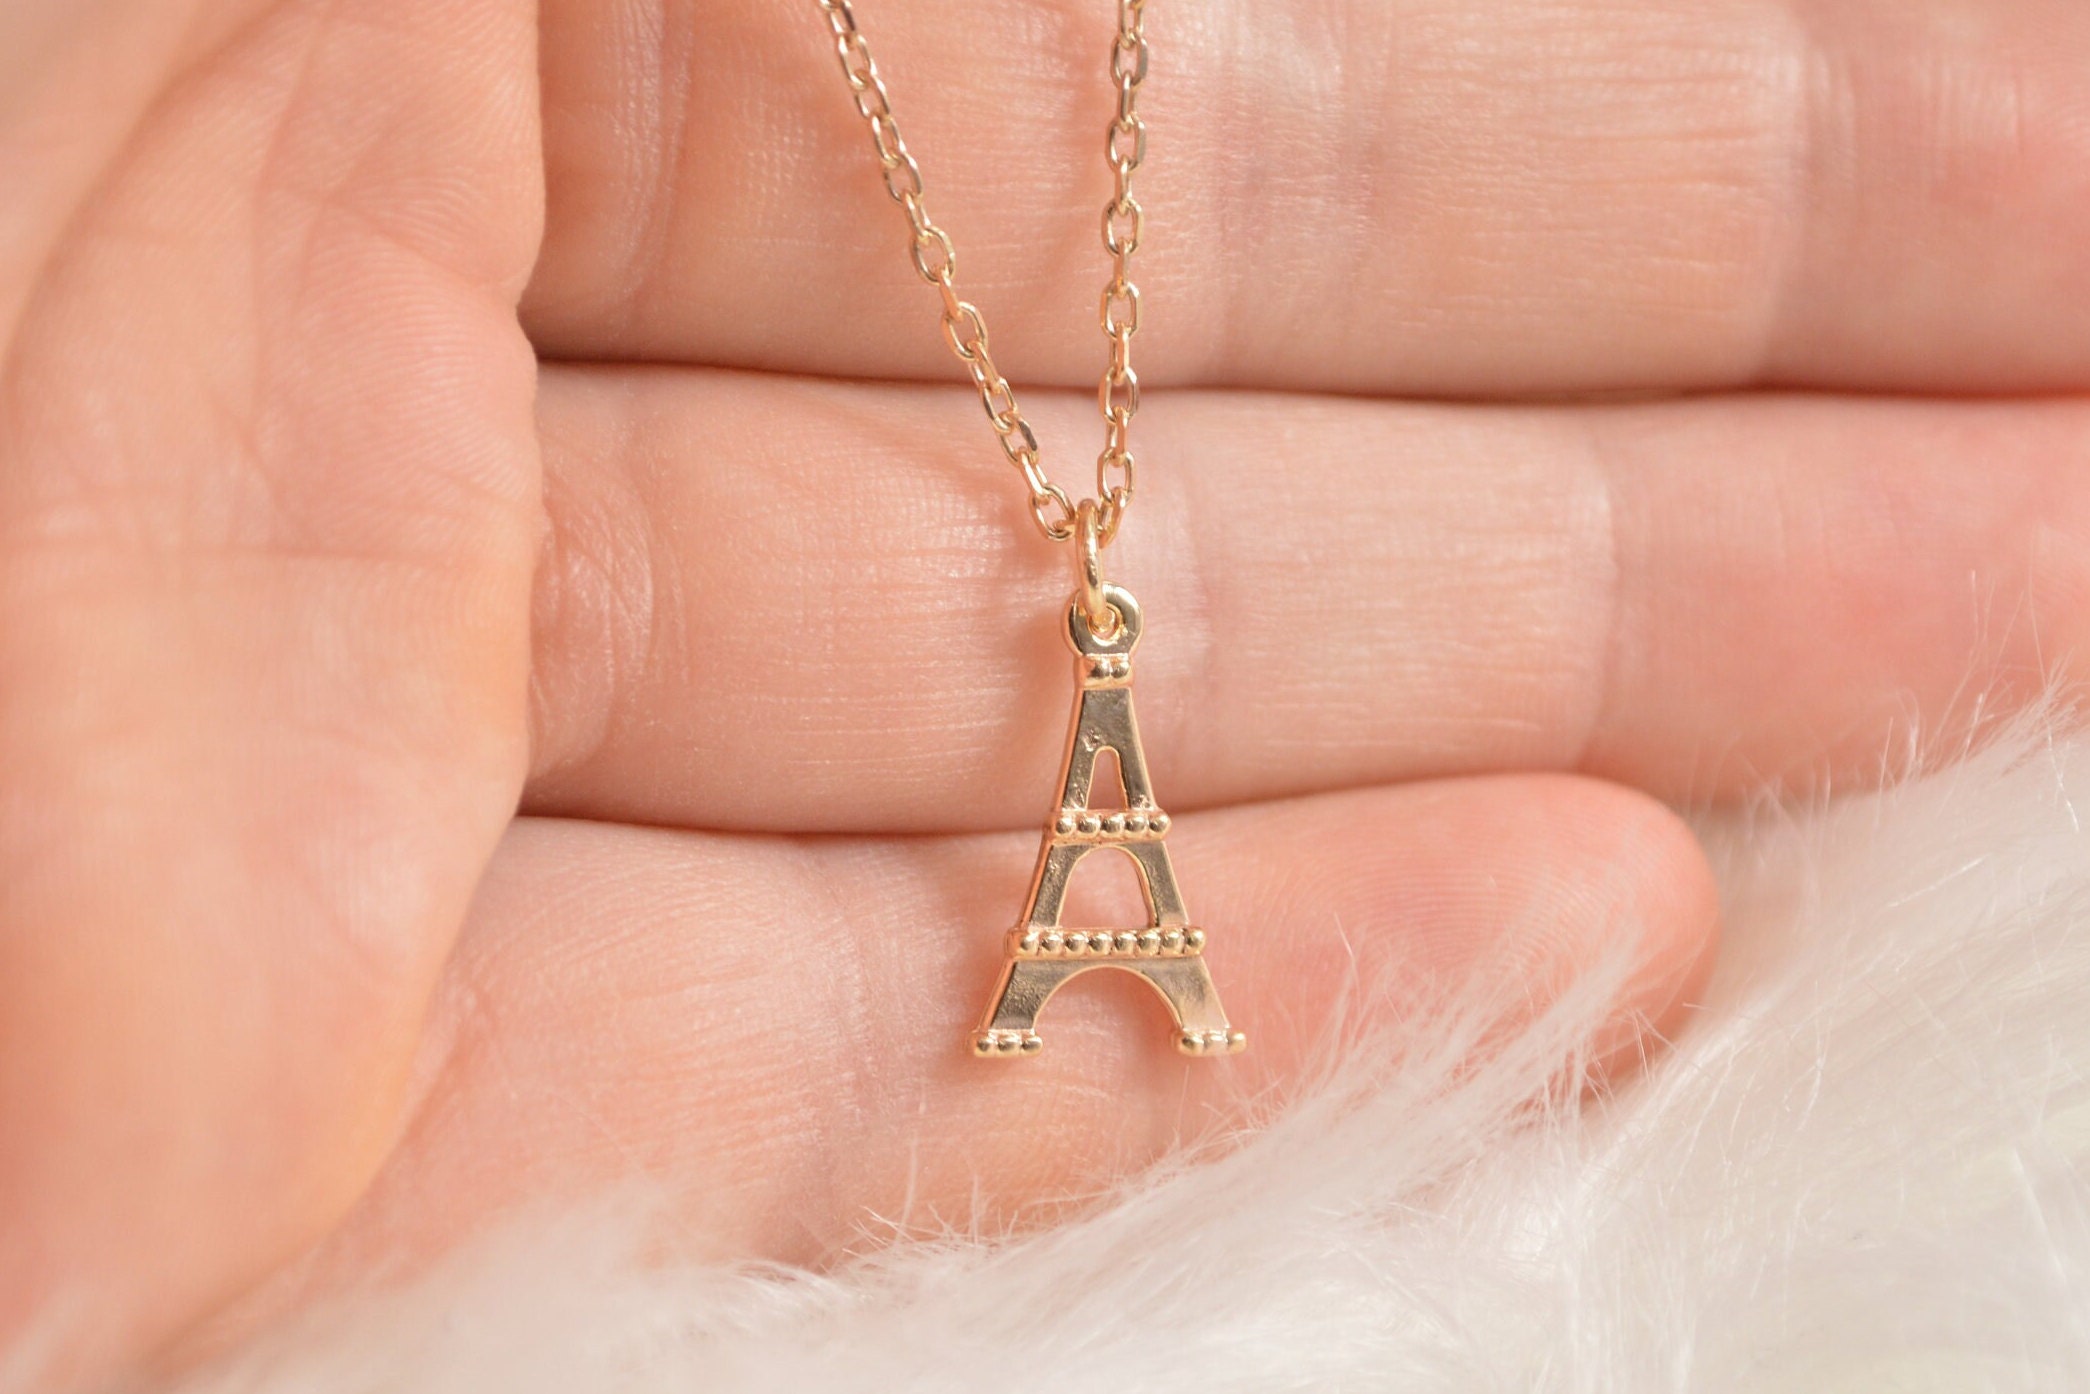 Tiffany & Co. Eiffel Tower Charm Necklace 46cm Chain 2.6cm x 1.2cm Top  w/Box/Bag | eBay